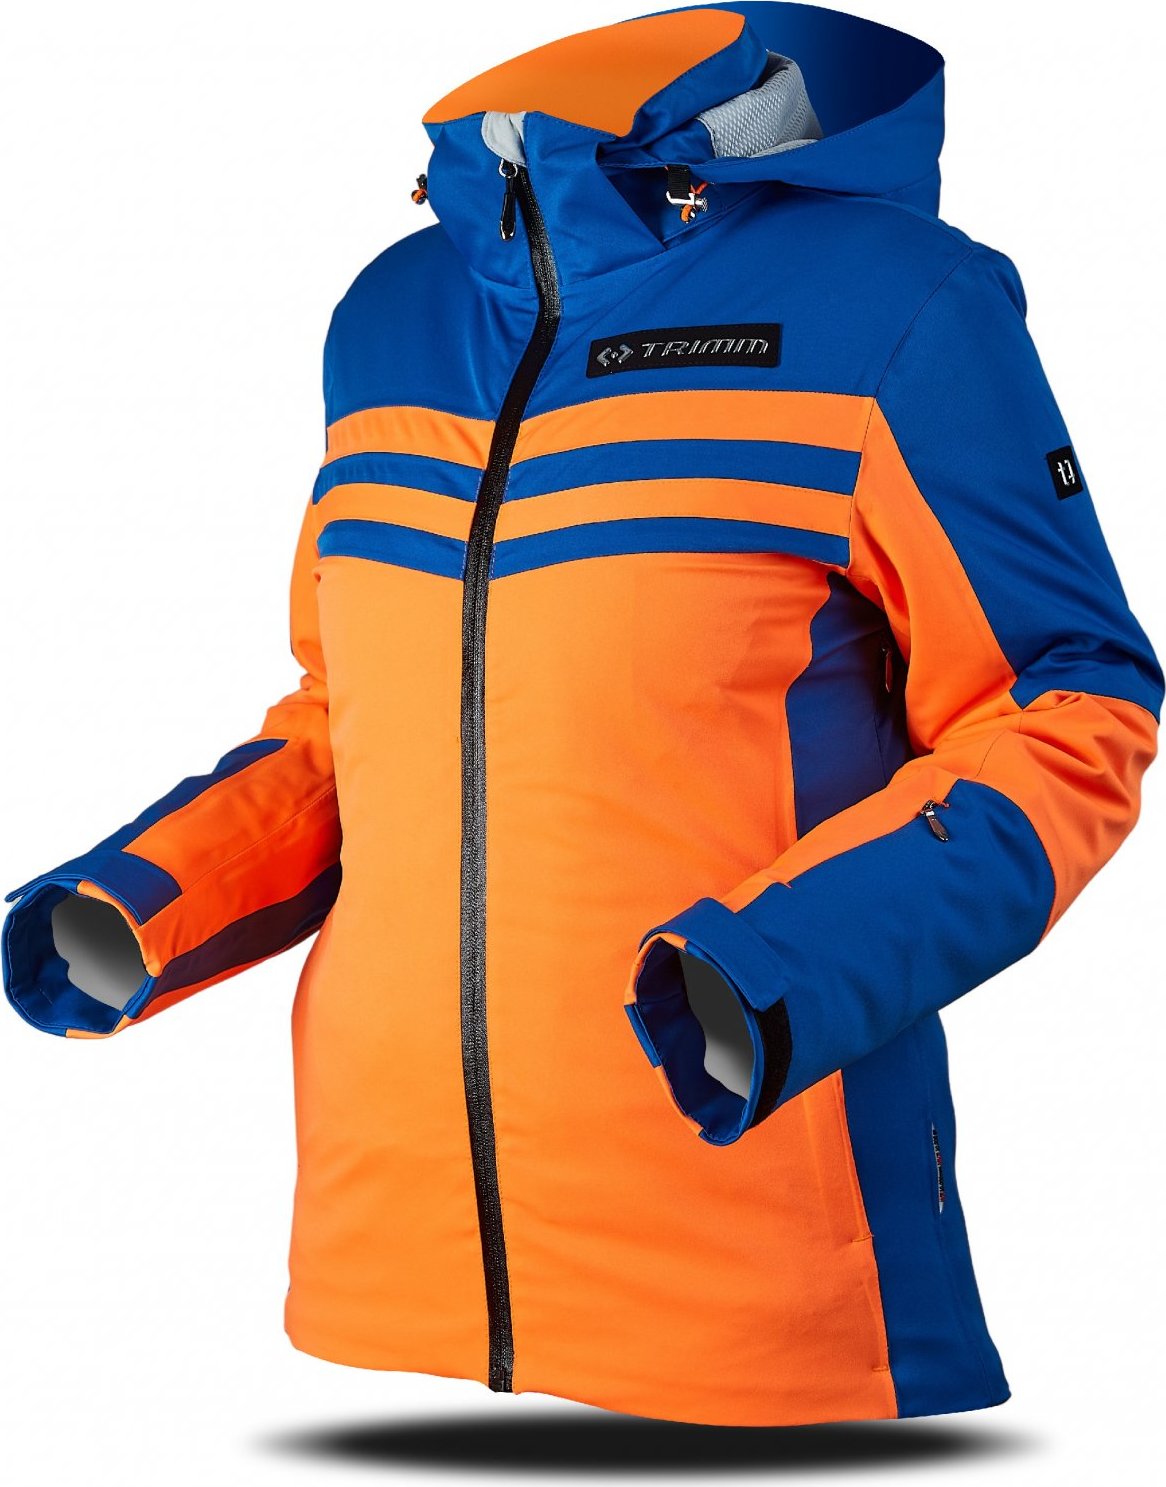 Dámská lyžařská bunda TRIMM Ilusion oranžová/modrá Velikost: XXL, Barva: signal orange/jeans blue